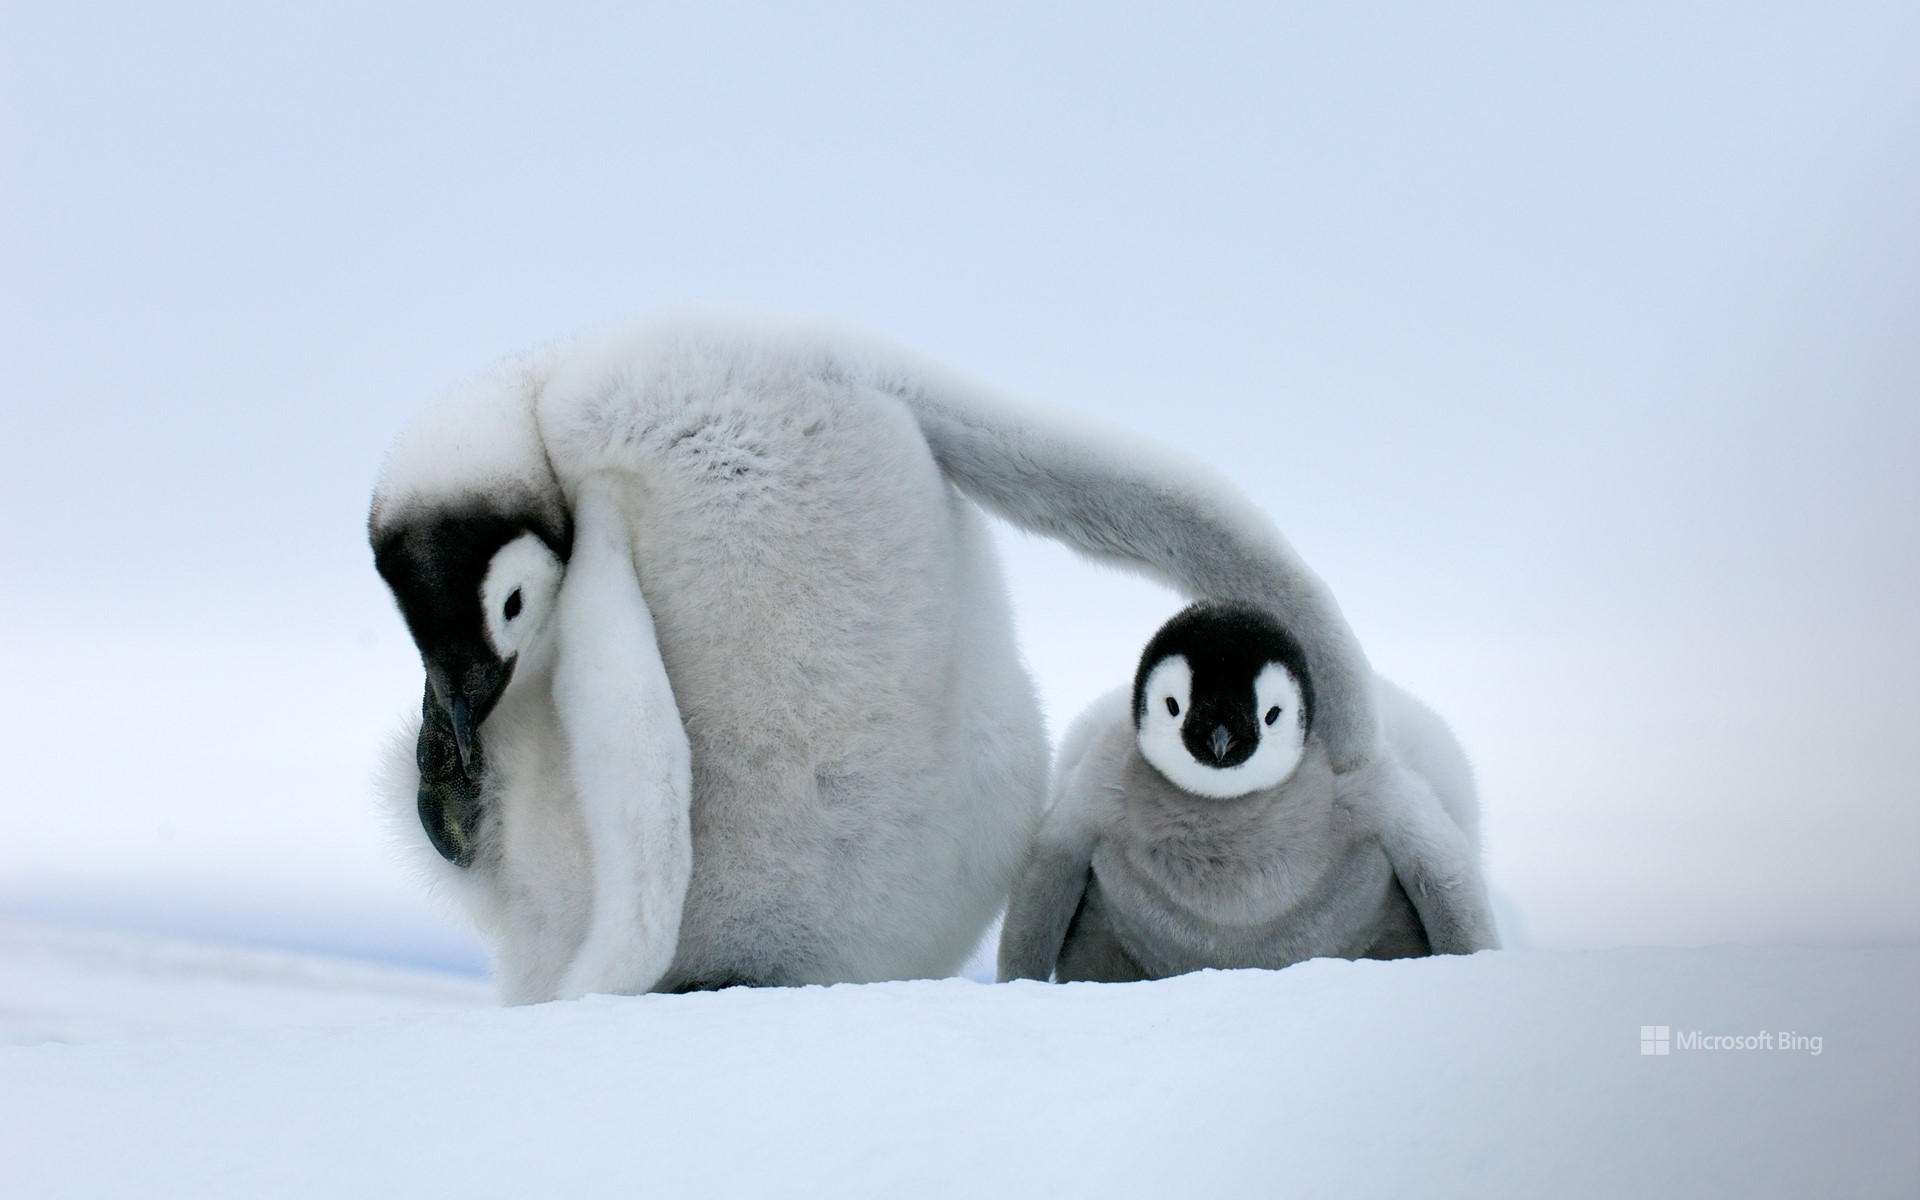 Two little Emperor penguins, Antarctica